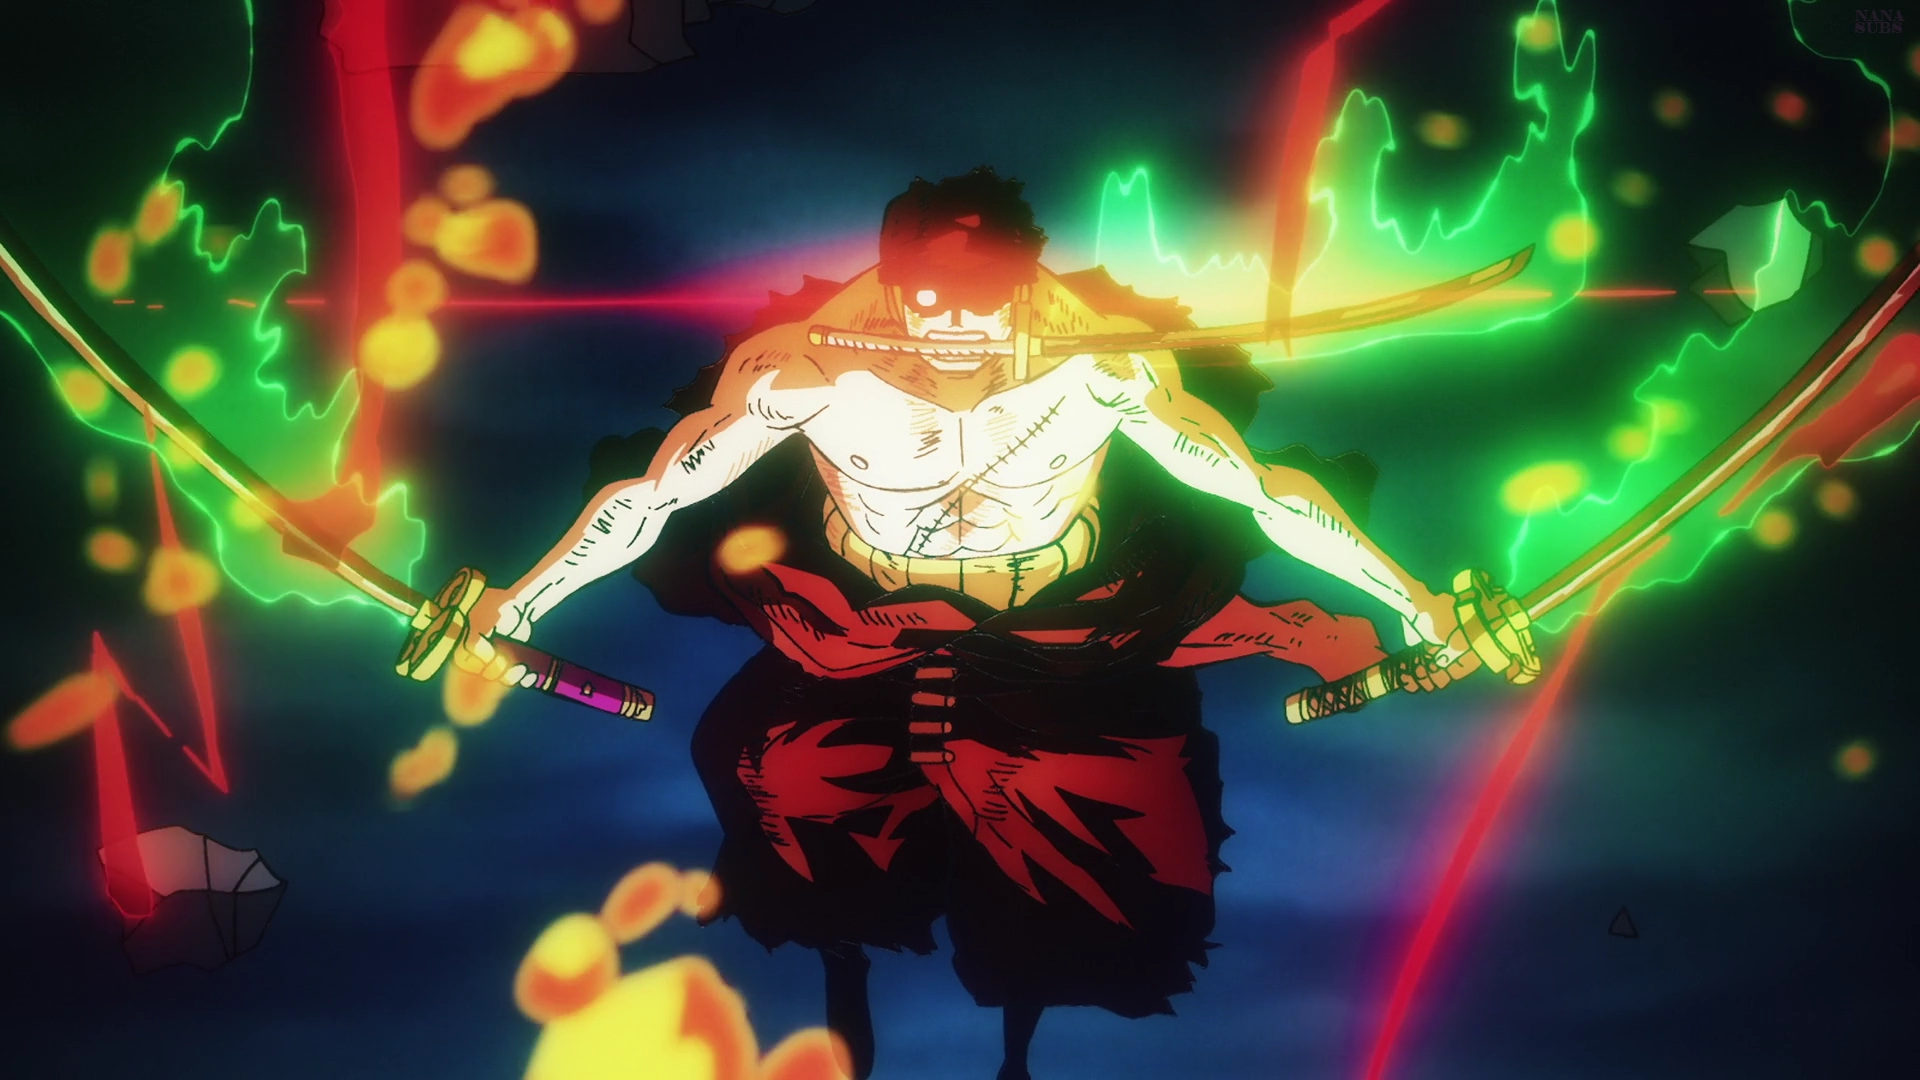 Minaturka 1062 odcinka One Piece